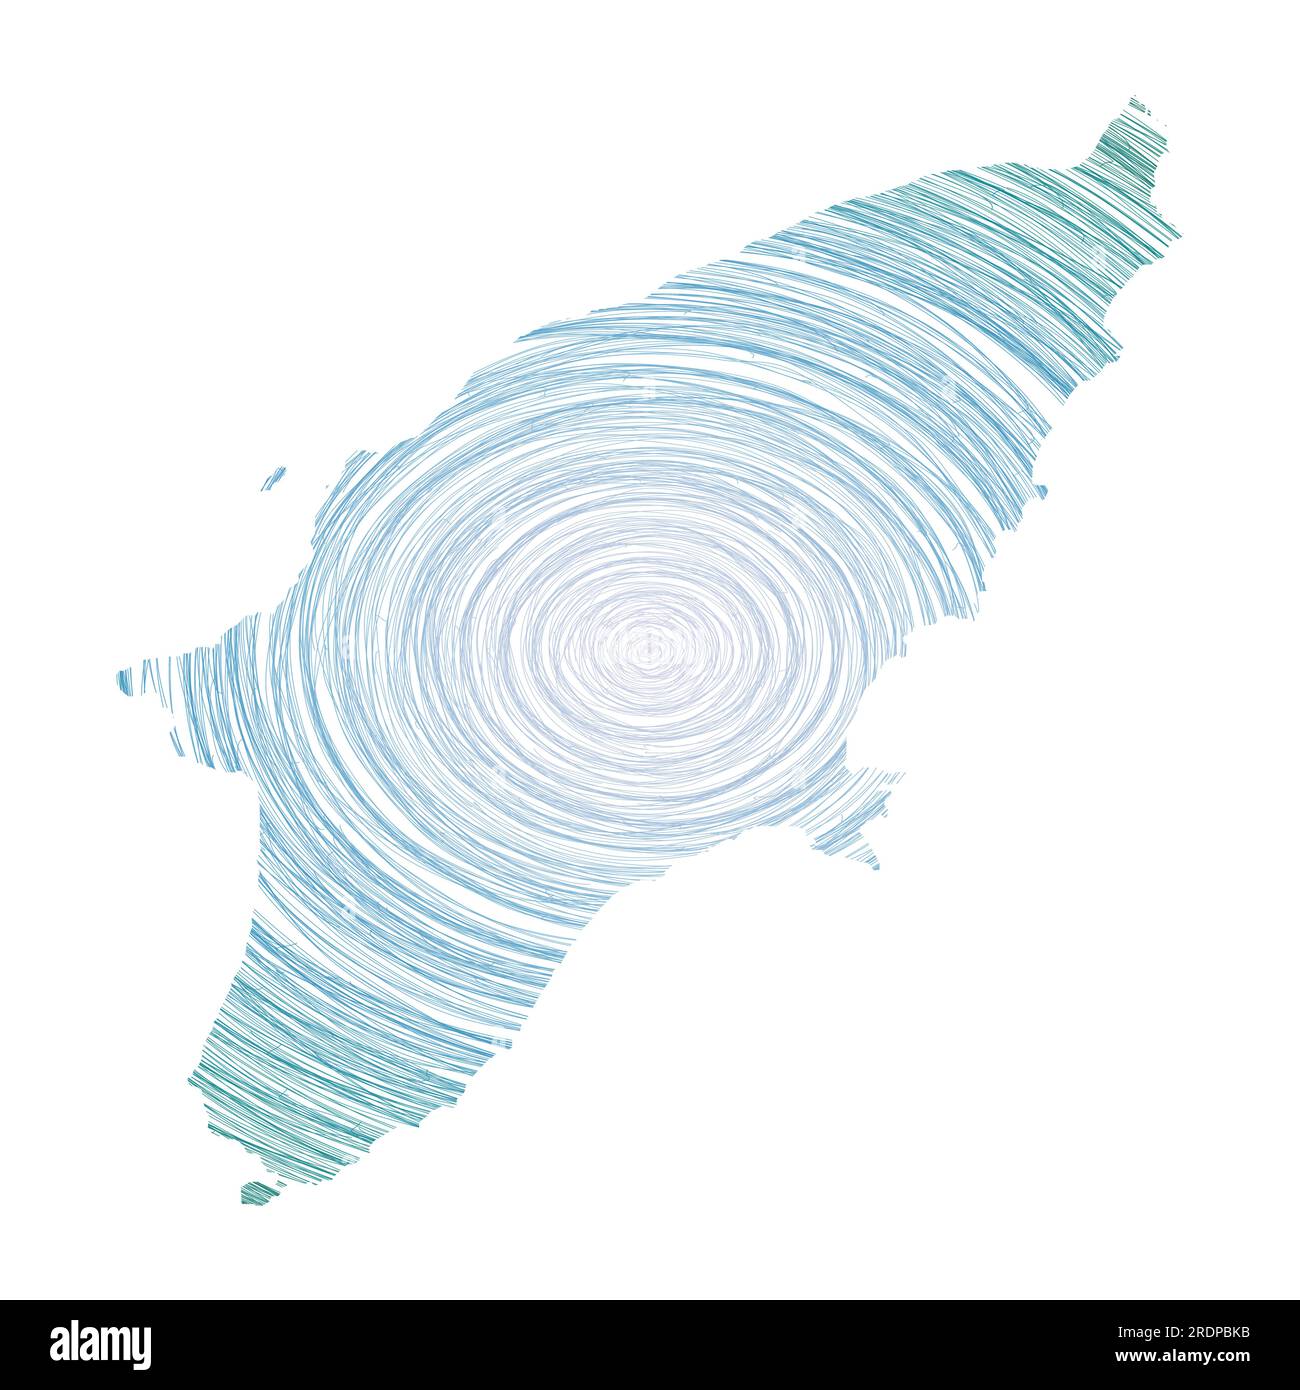 Mappa di Rodi riempita con cerchi concentrici. Disegna cerchi di stile a forma di isola. Illustrazione vettoriale. Illustrazione Vettoriale